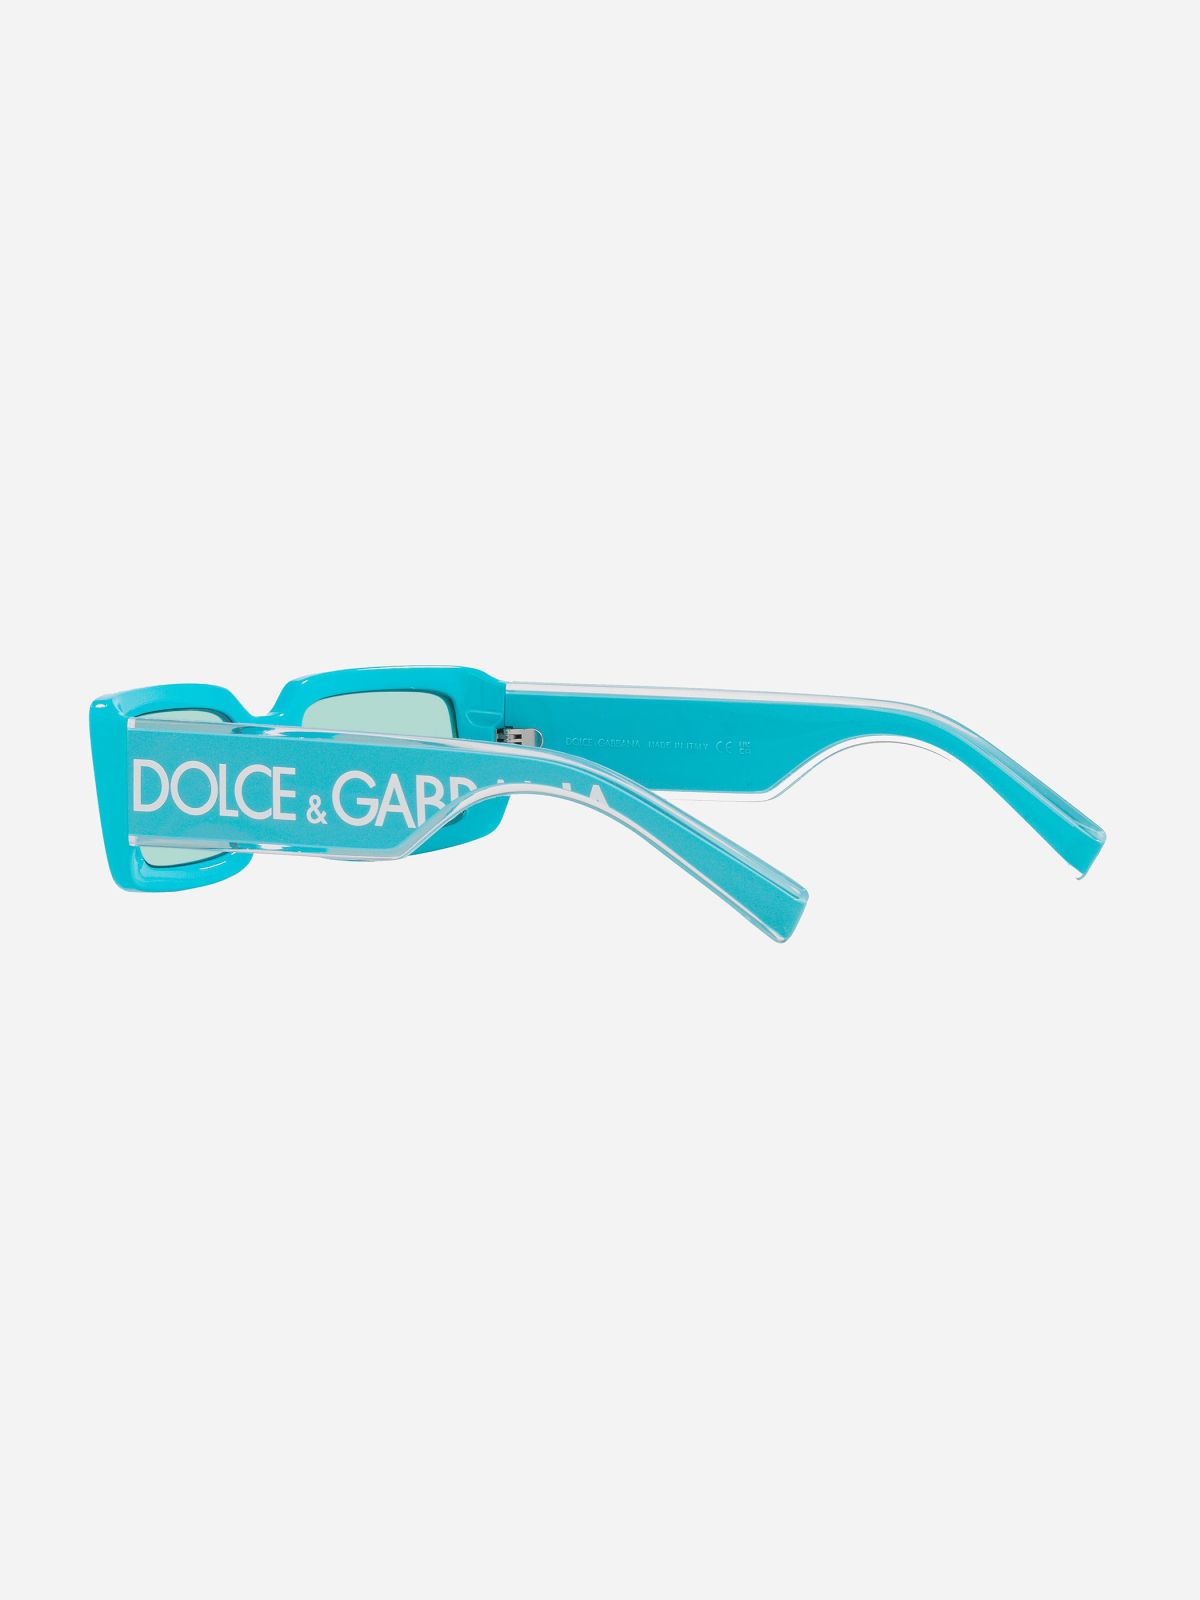  משקפי שמש מלבניים / נשים של D&G